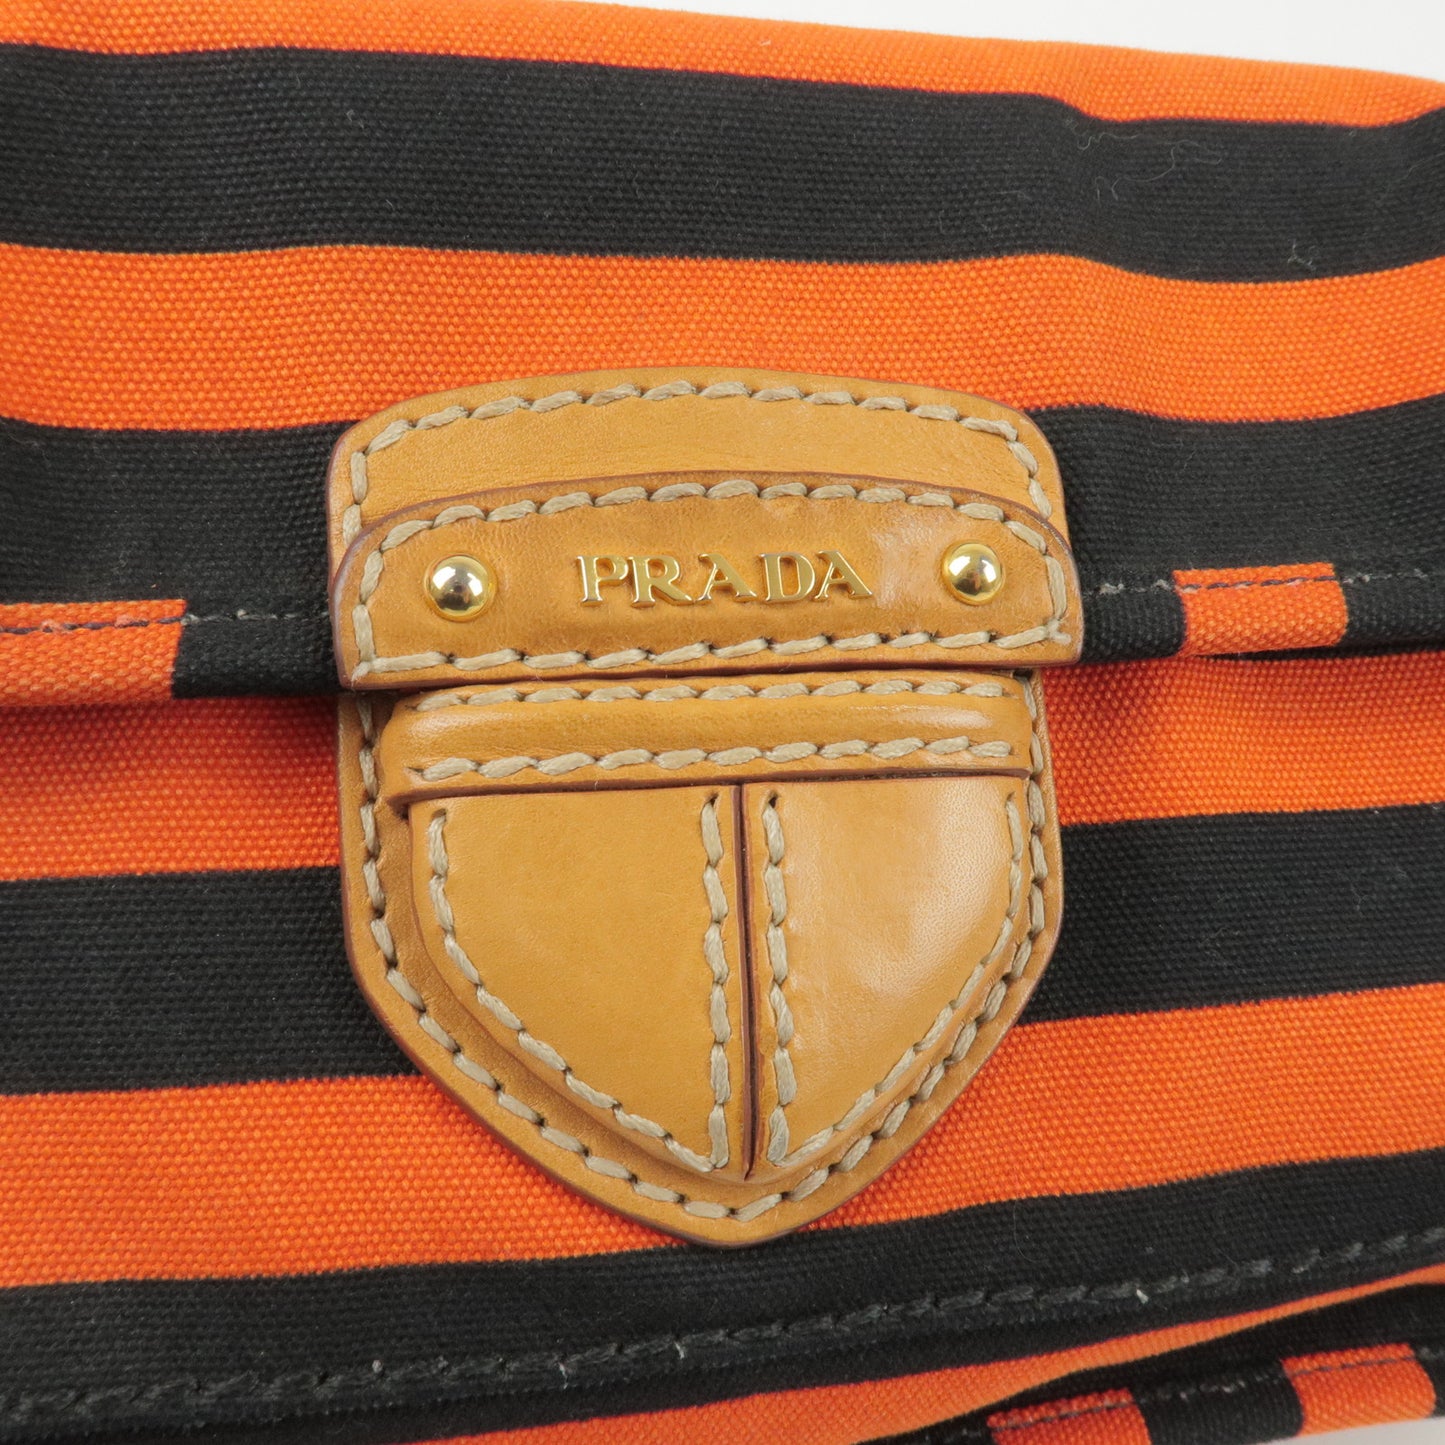 PRADA Logo Canvas Leather Shoulder Bag Hand Bag Orange Black